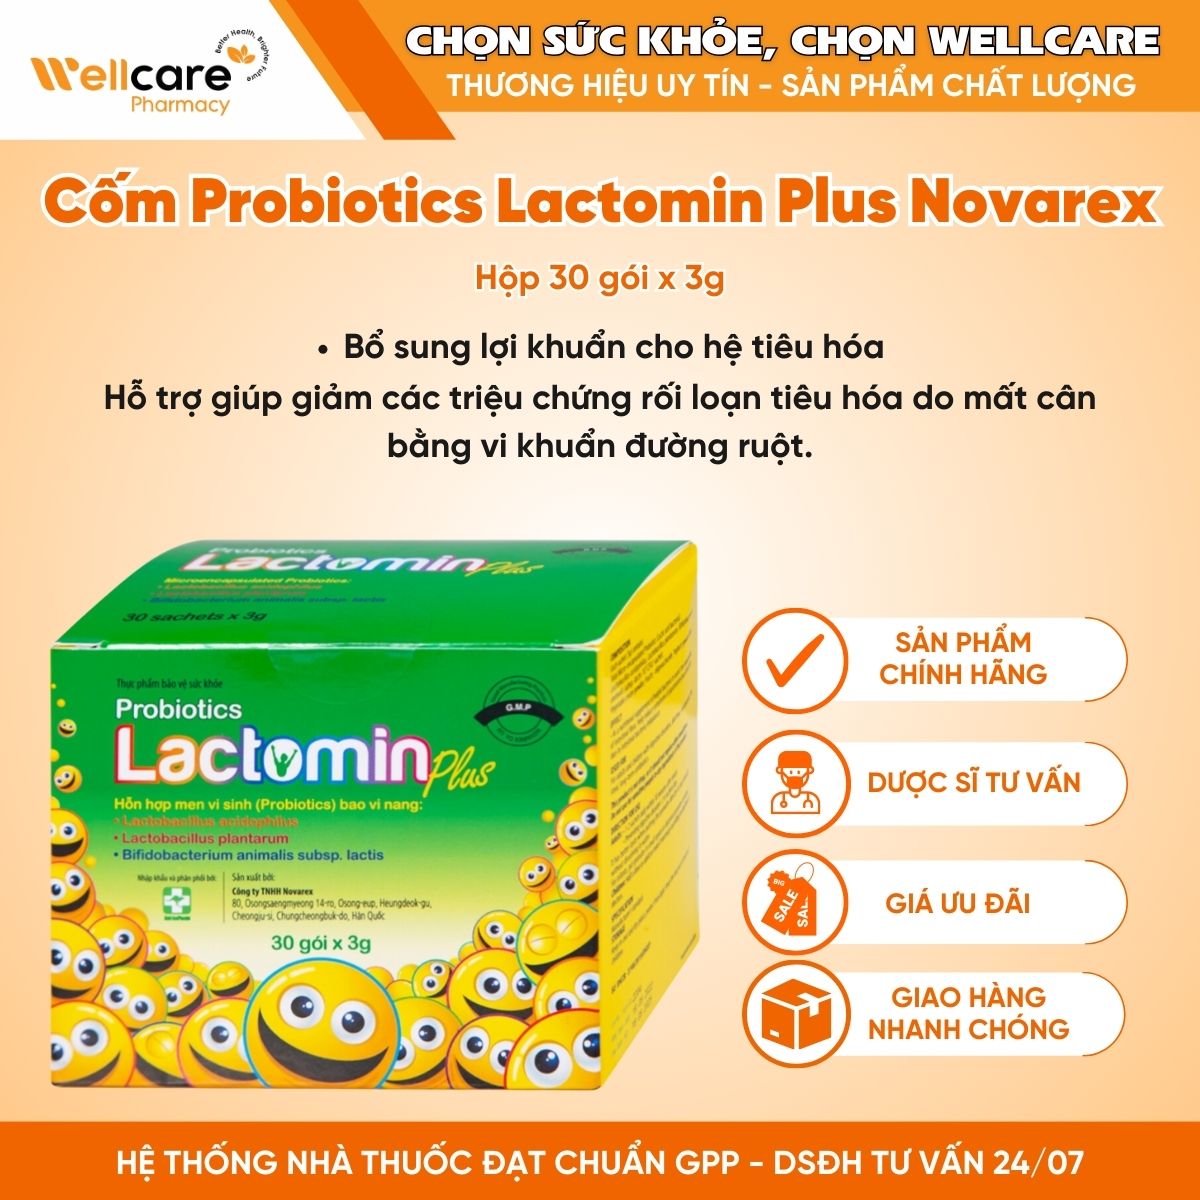 Cốm Probiotics Lactomin Plus Novarex – Bổ sung lợi khuẩn cho hệ tiêu hóa (Hộp 30 gói x 3g)